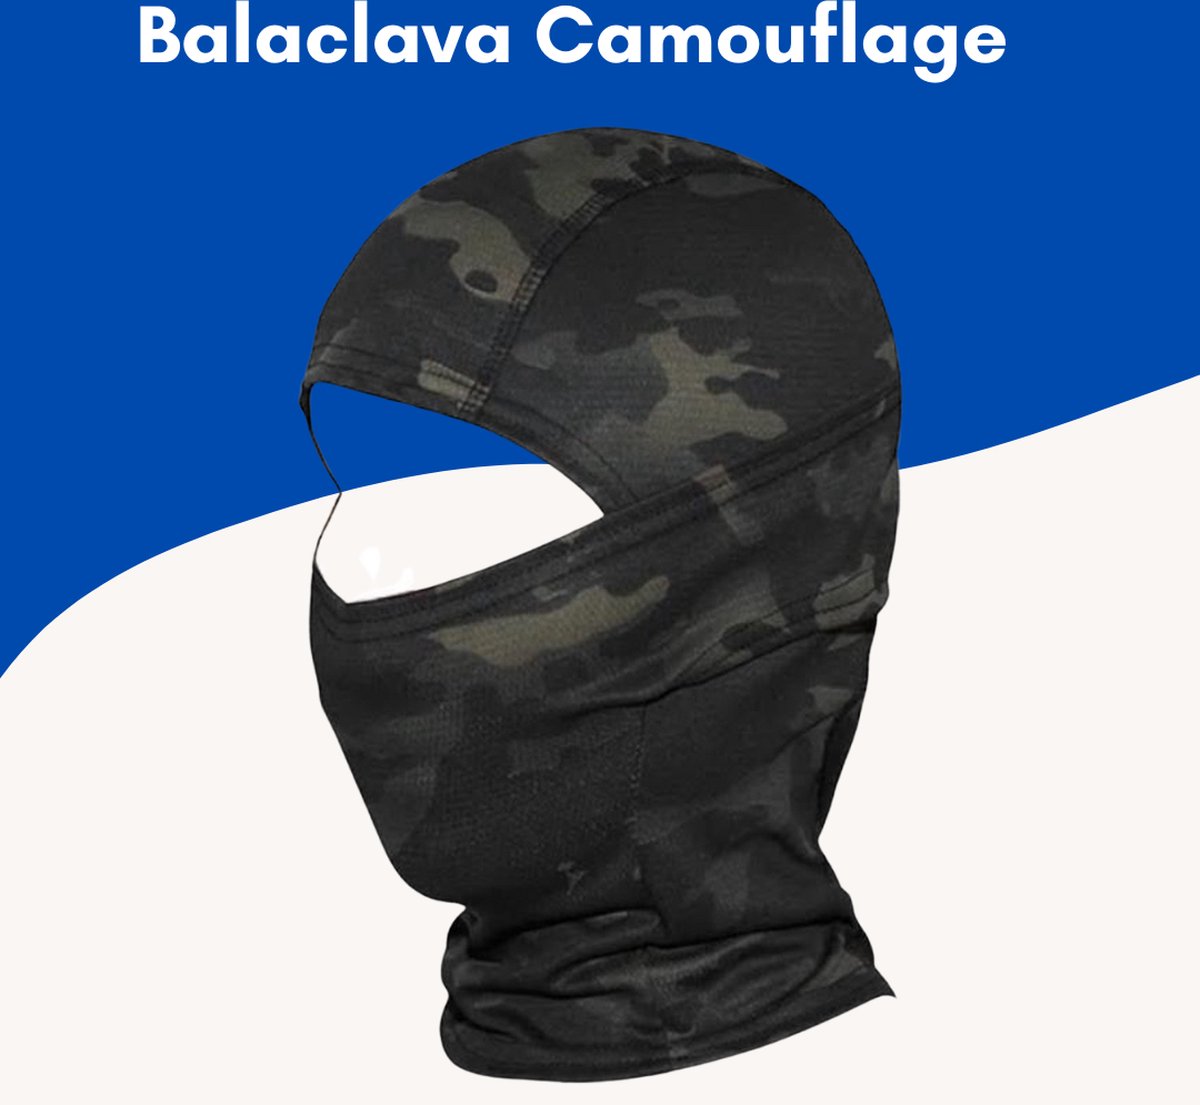 Supertarget - Bivakmuts Balaclava - Camouflage - Bivak Muts Nekwarmer - One Size/Unisex - Gezichtsmasker voor o.a. Skien, Snowboarden,